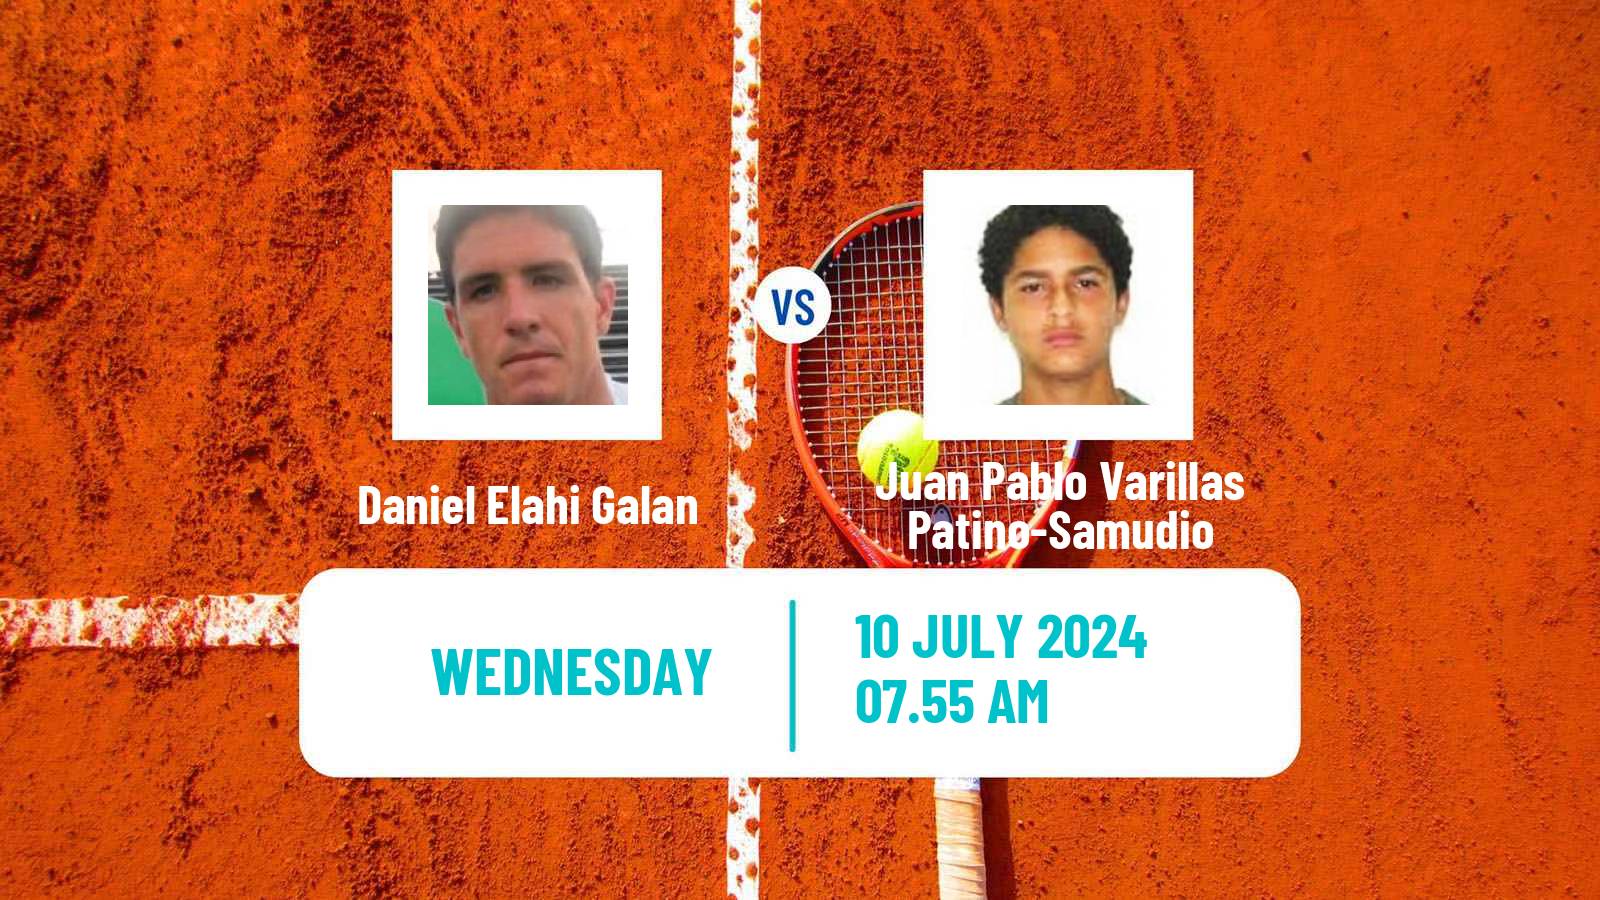 Tennis Braunschweig Challenger Men Daniel Elahi Galan - Juan Pablo Varillas Patino-Samudio